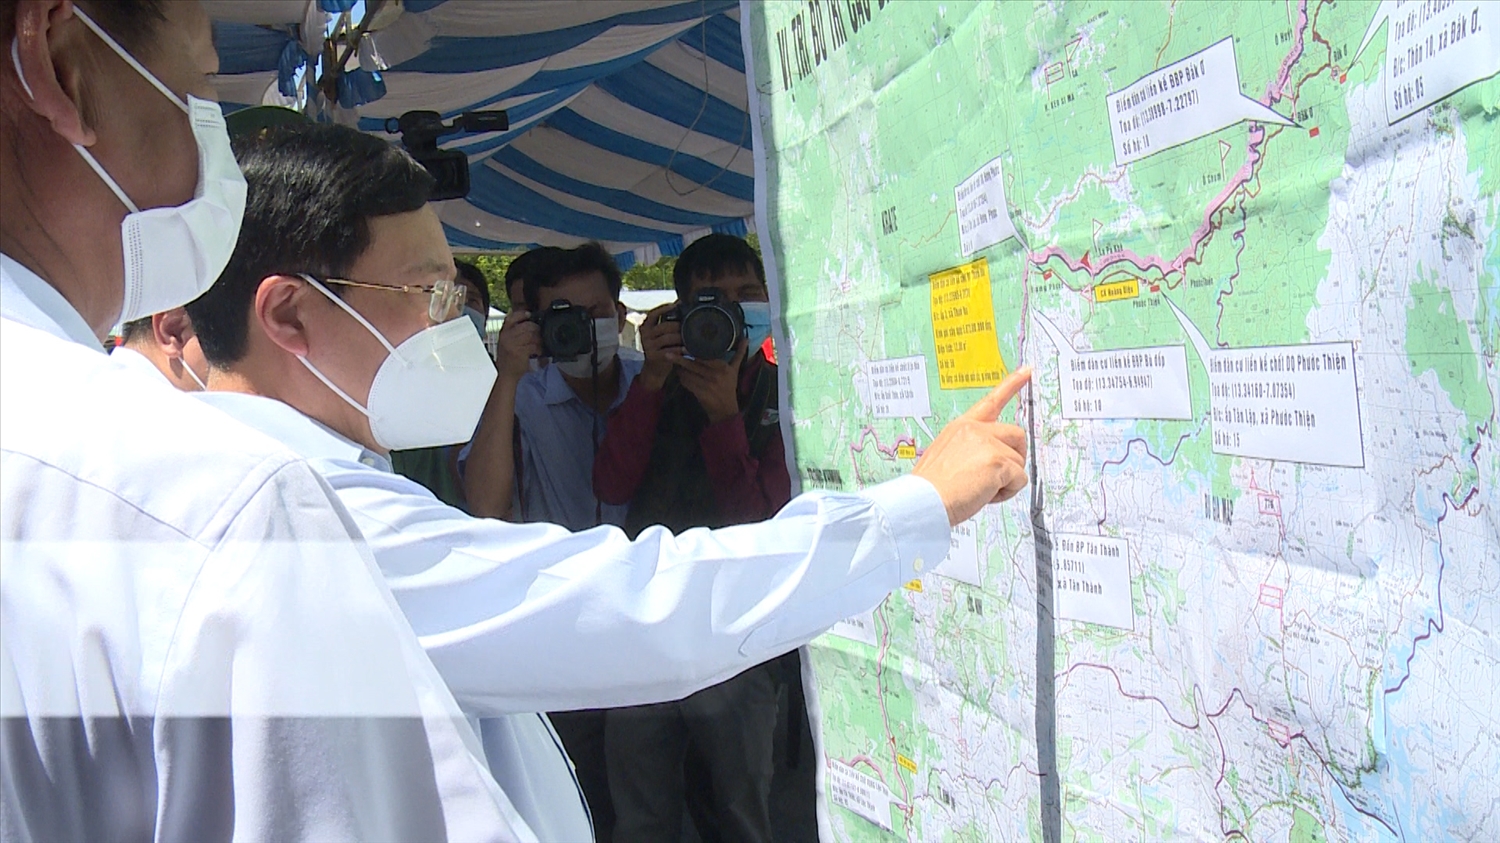 Phó thủ tướng Thường trực Phạm Bình Minh xem bản đồ vị trí bố trí các điểm dân cư biên giới tại Bình Phước nhân chuyến thăm và tham dự các hoạt động kỷ niệm 50 năm Ngày giải phóng huyện Lộc Ninh và huyện Bù Đốp ngày 6/4/2022